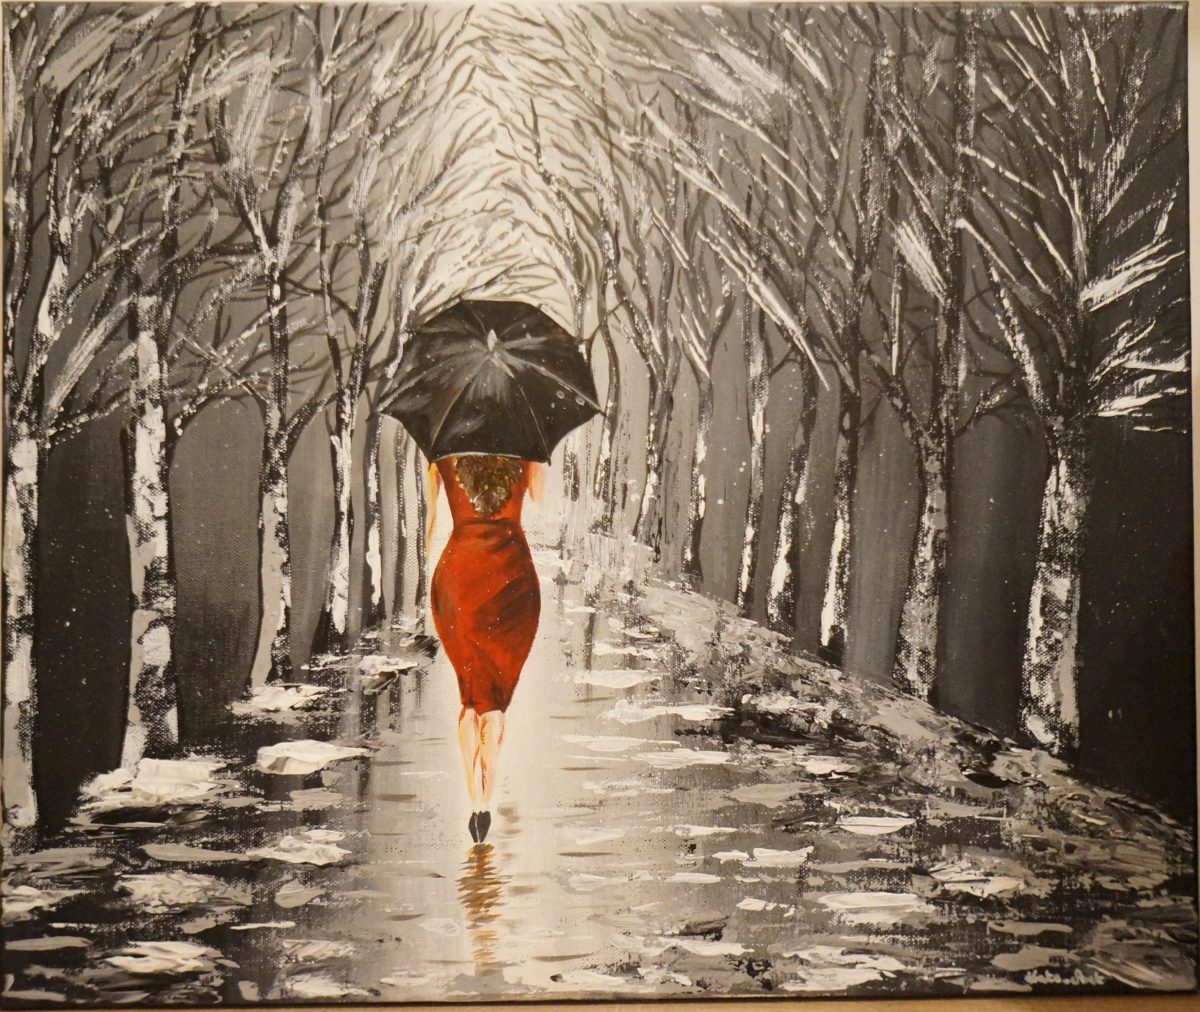 Black Umbrella - peinture acrylique fait au couteau, avec une femme en robe rouge etavec un parapluie noir marchant sous la pluie vers une allée d'arbres